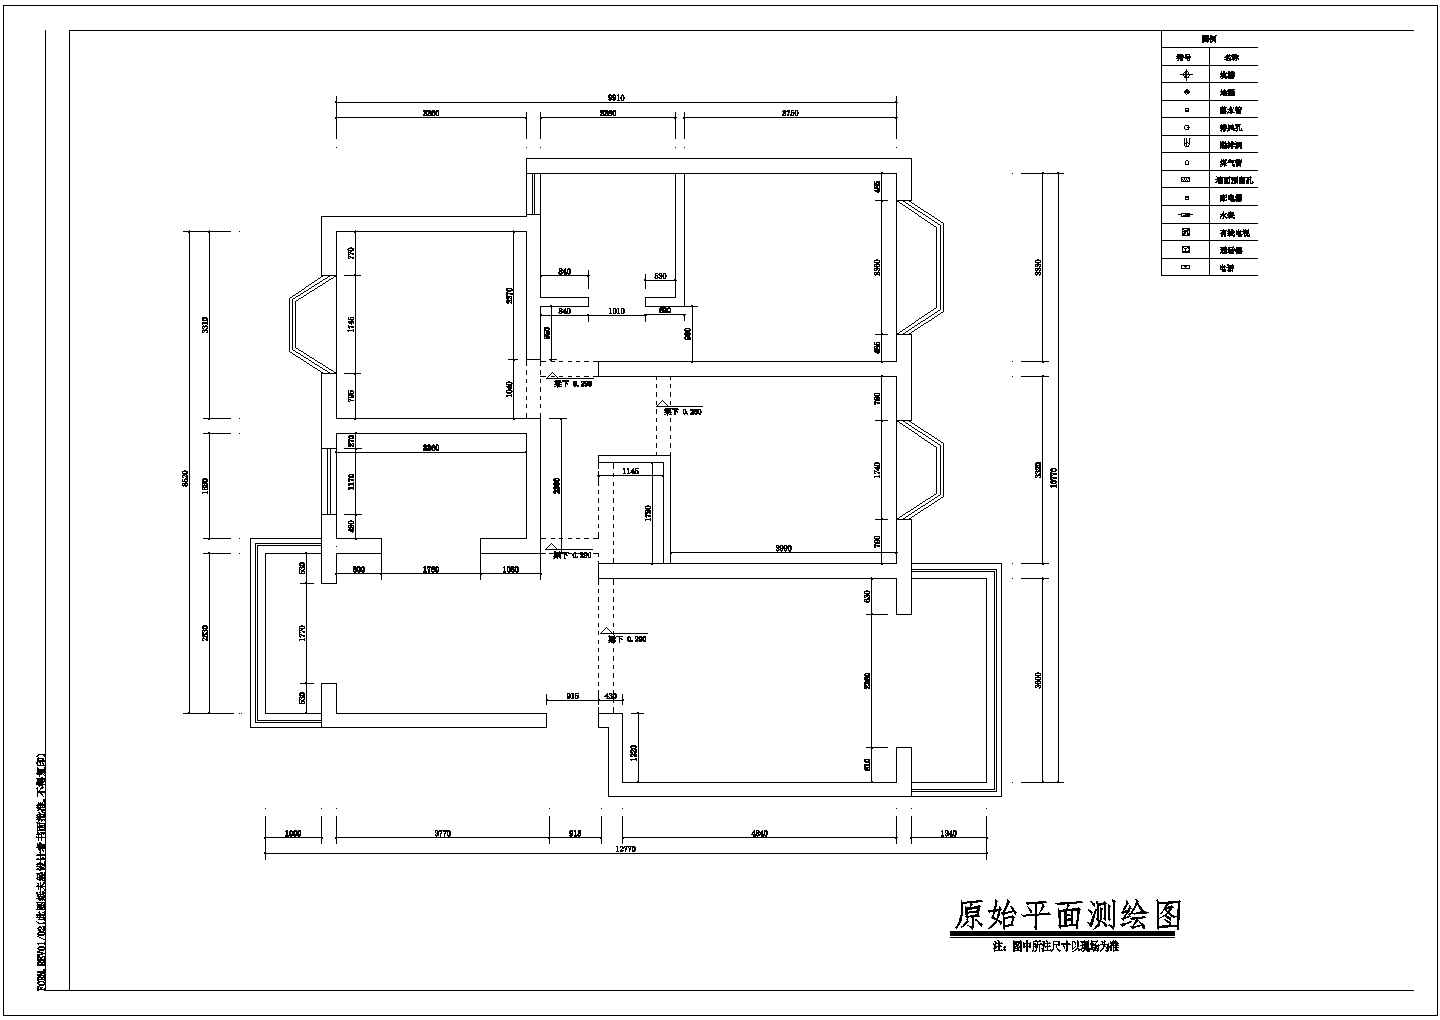 苏州样板房全套室内装修设计方案cad图(含套内建筑装修材料表)